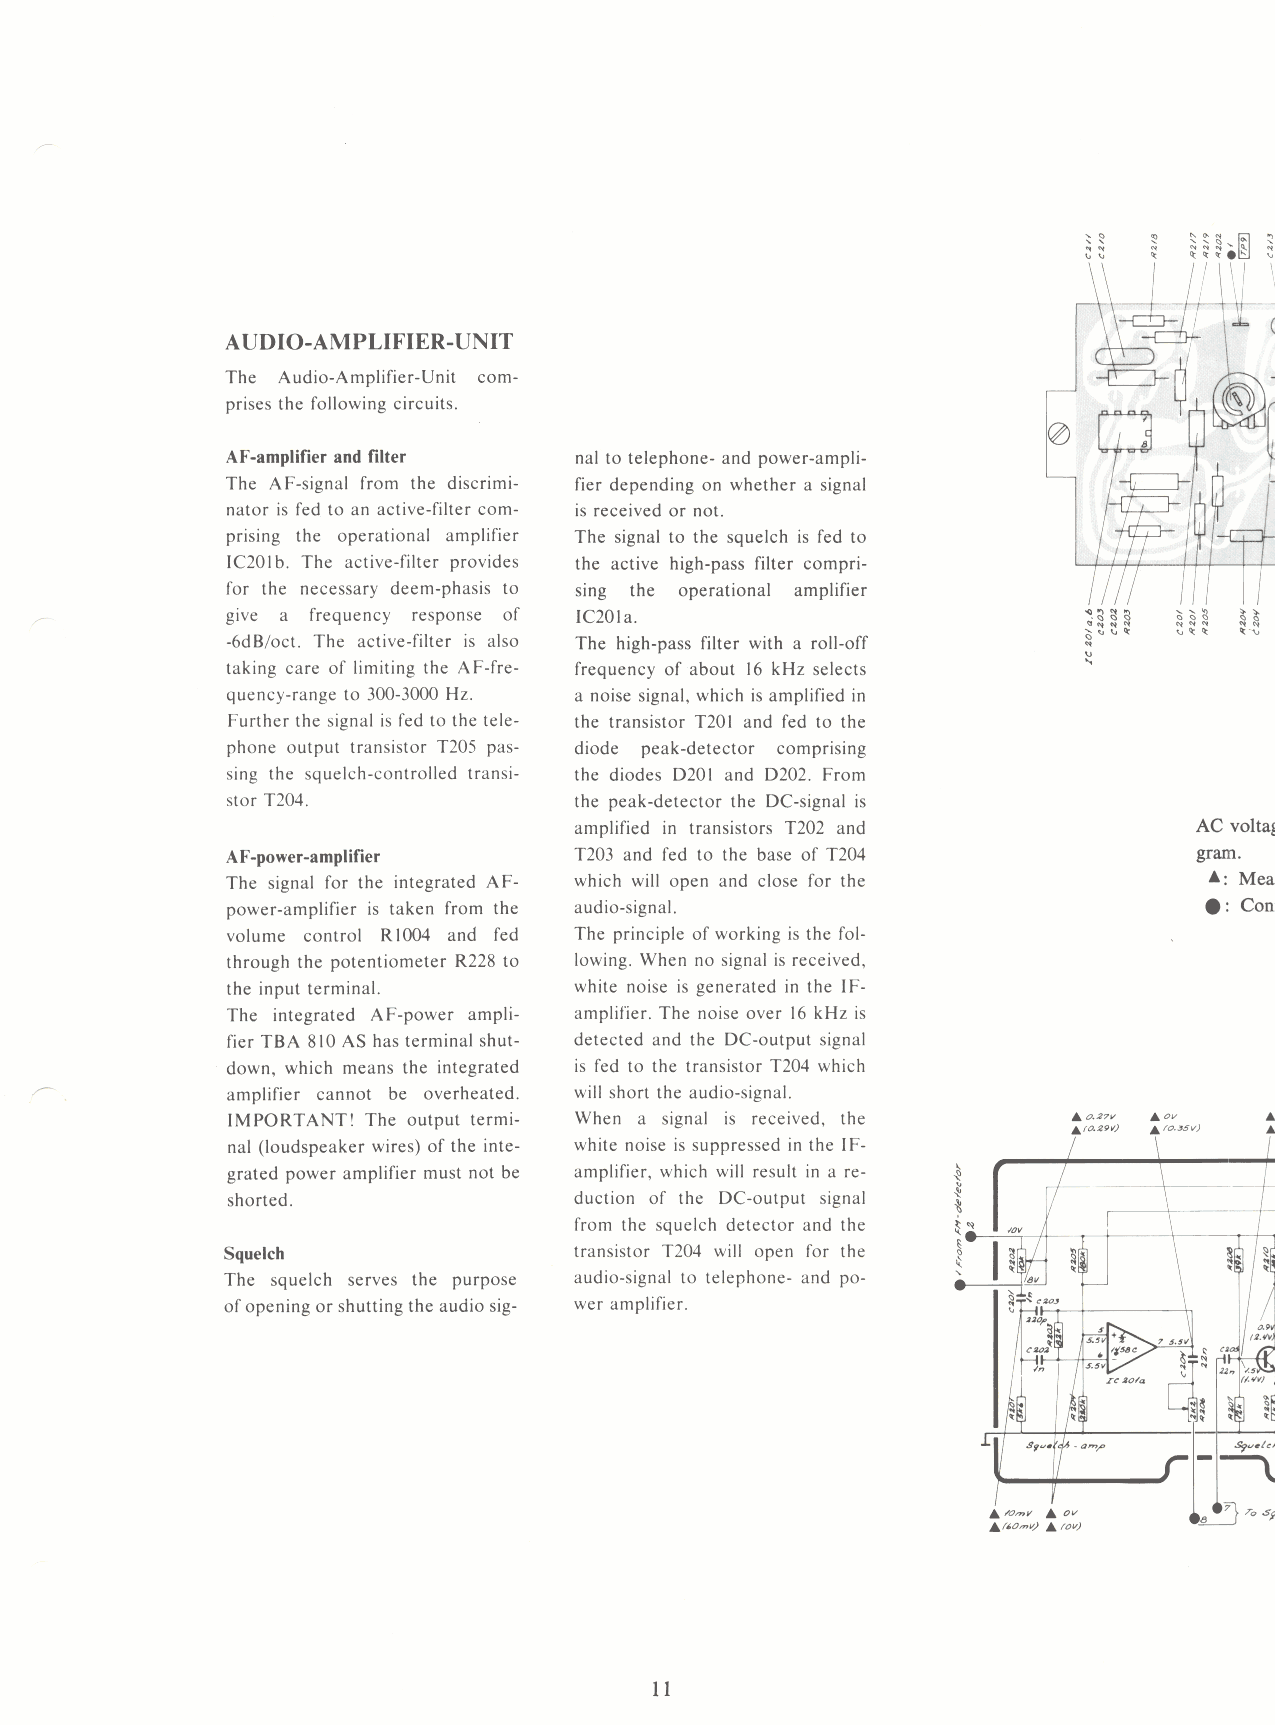 Audio amplifier unit page 2